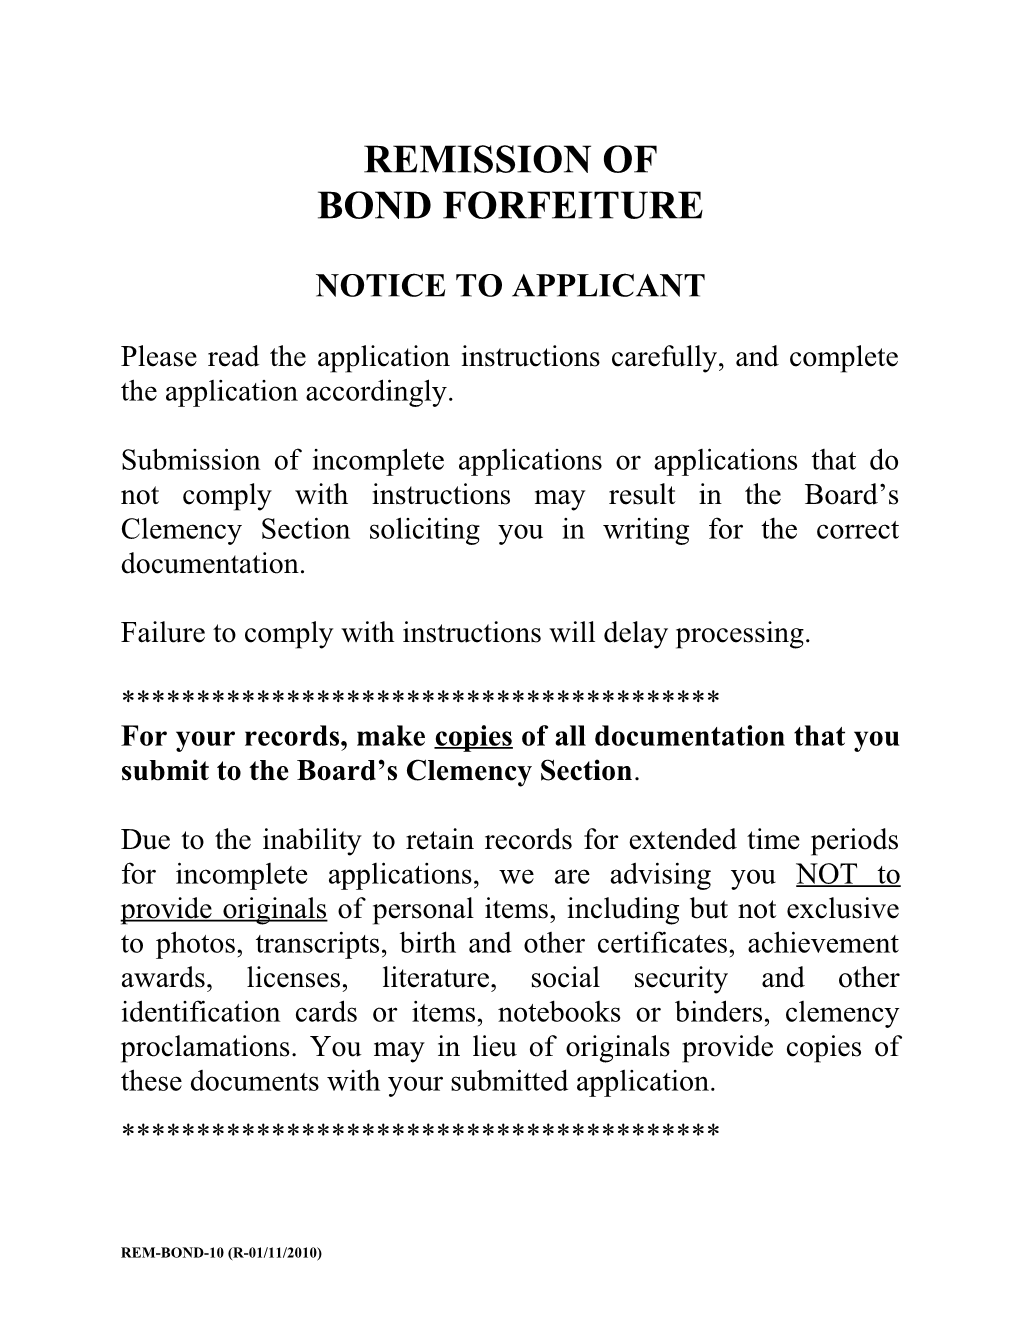 Bond Forfeiture